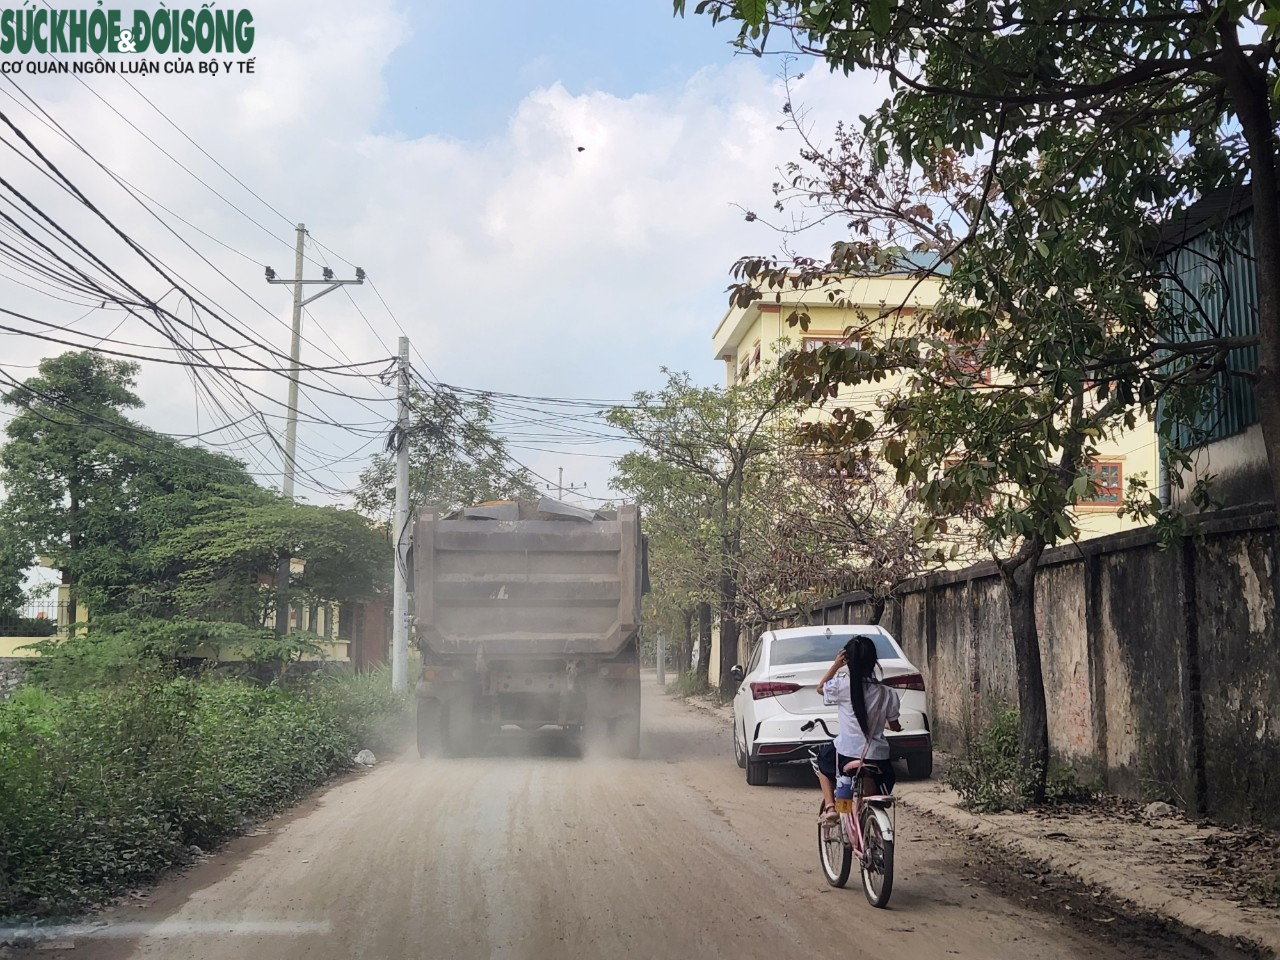 Học sinh Hà Nội ‘khóc thét’ trước cảnh hàng trăm xe tải hạng nặng chạy kín đường - Ảnh 13.